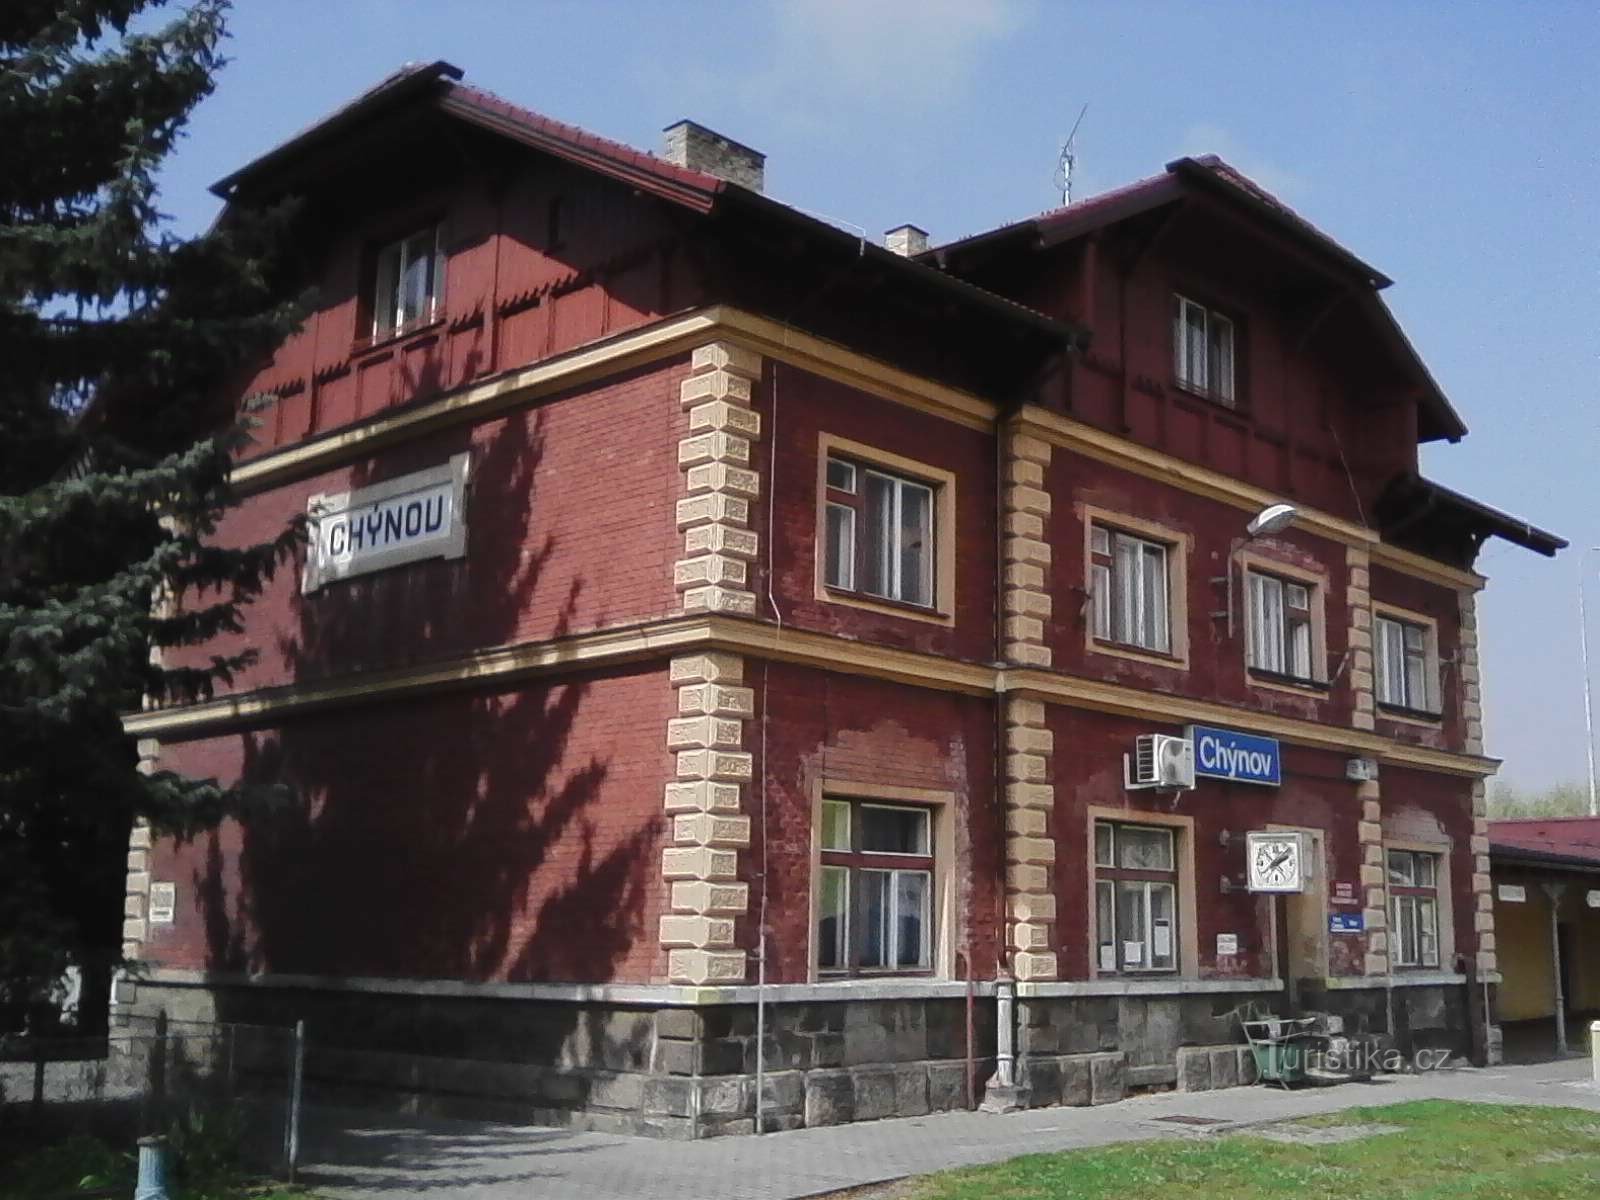 1. Postaja v Chýnovu na progi 224, Tábor - Horní Cerekev, 69 km.